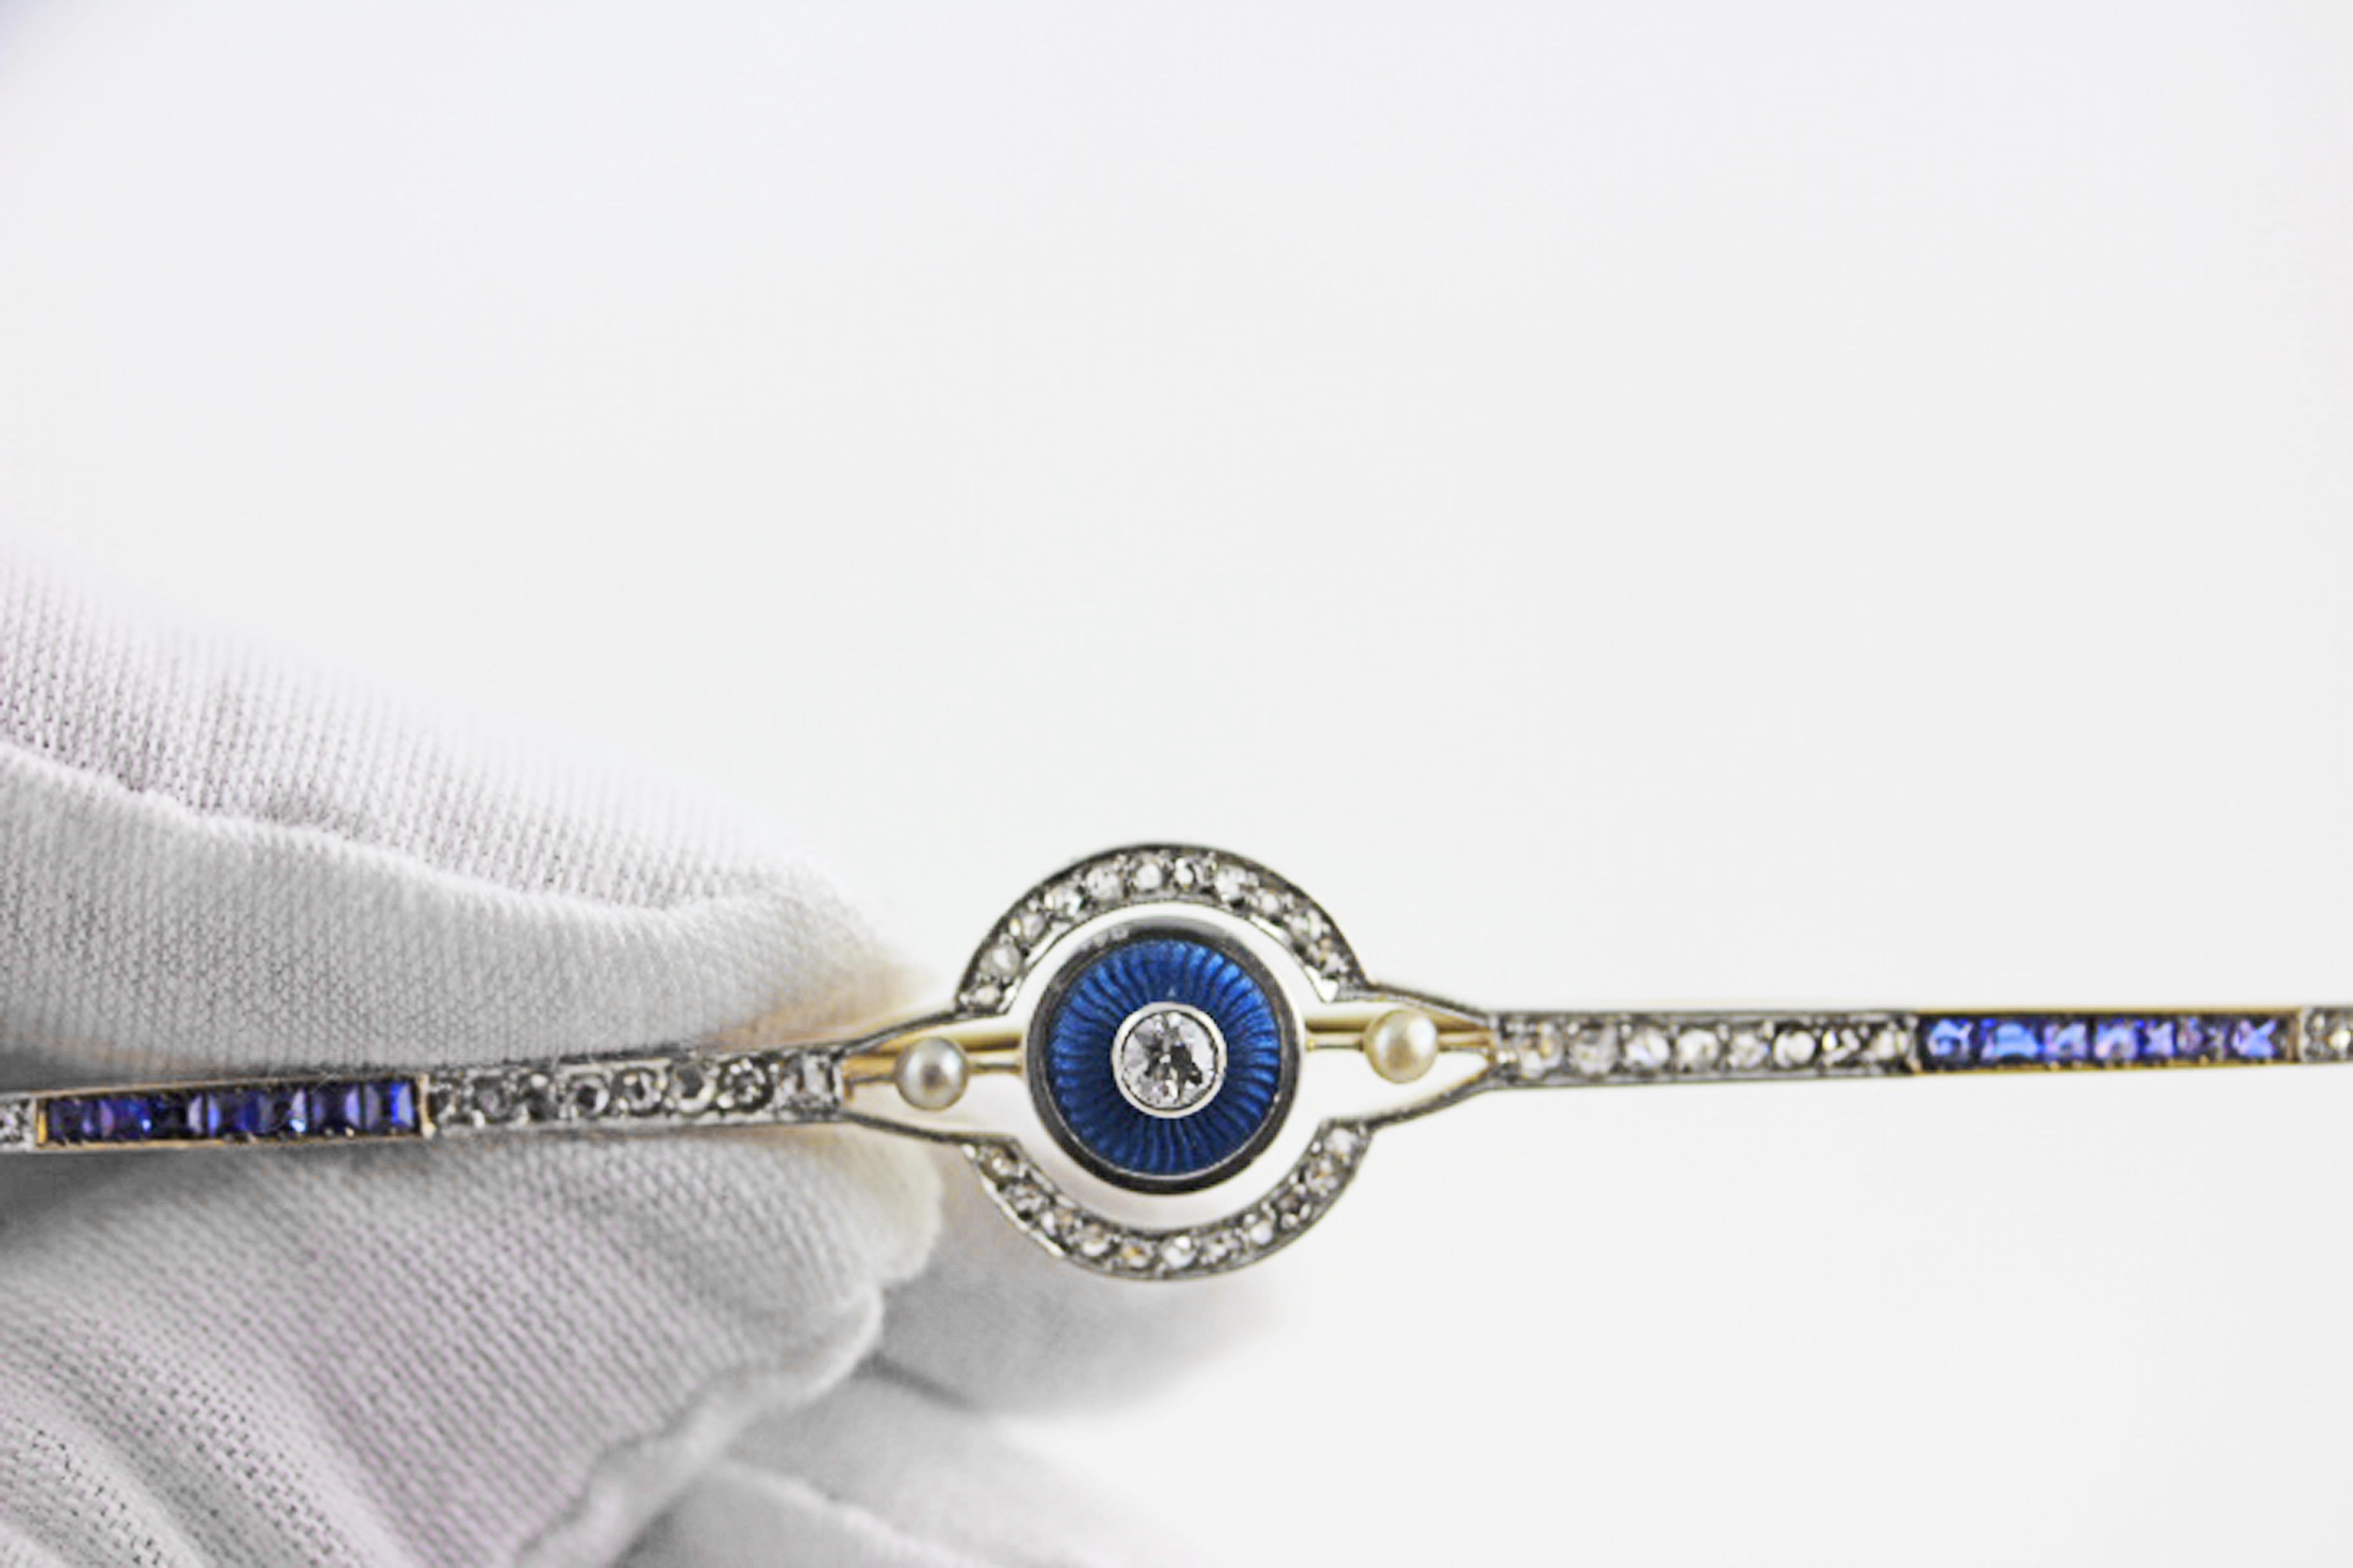 Cette épingle de bar Art déco originale et très particulière est réalisée en or jaune 14 carats. L'élégant motif géométrique est composé de diamants étincelants entrecoupés de saphirs bleus vifs et embellis par des perles.
Cette broche en forme de